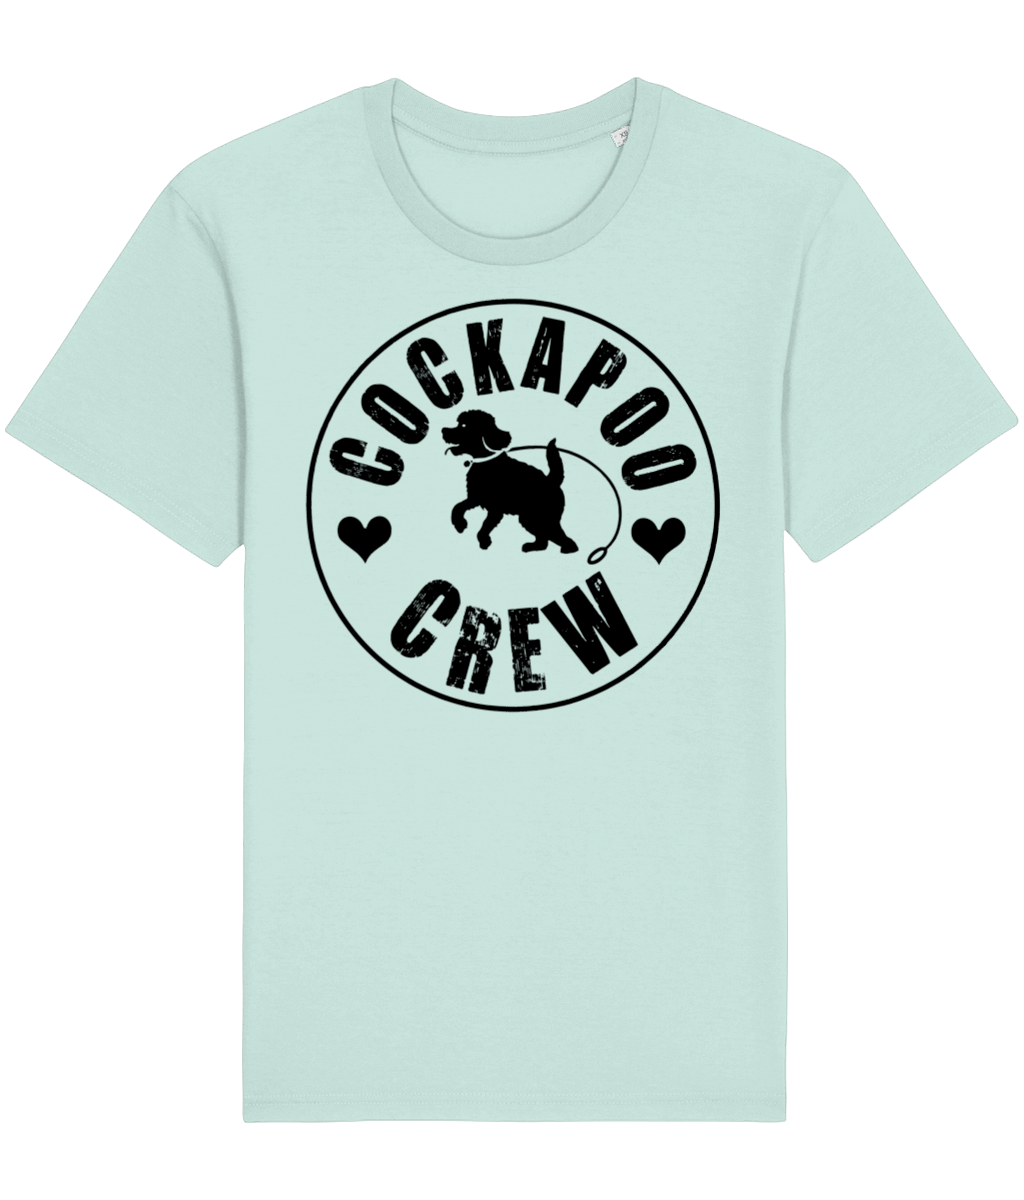 Blue cockapoo crew t-shirt